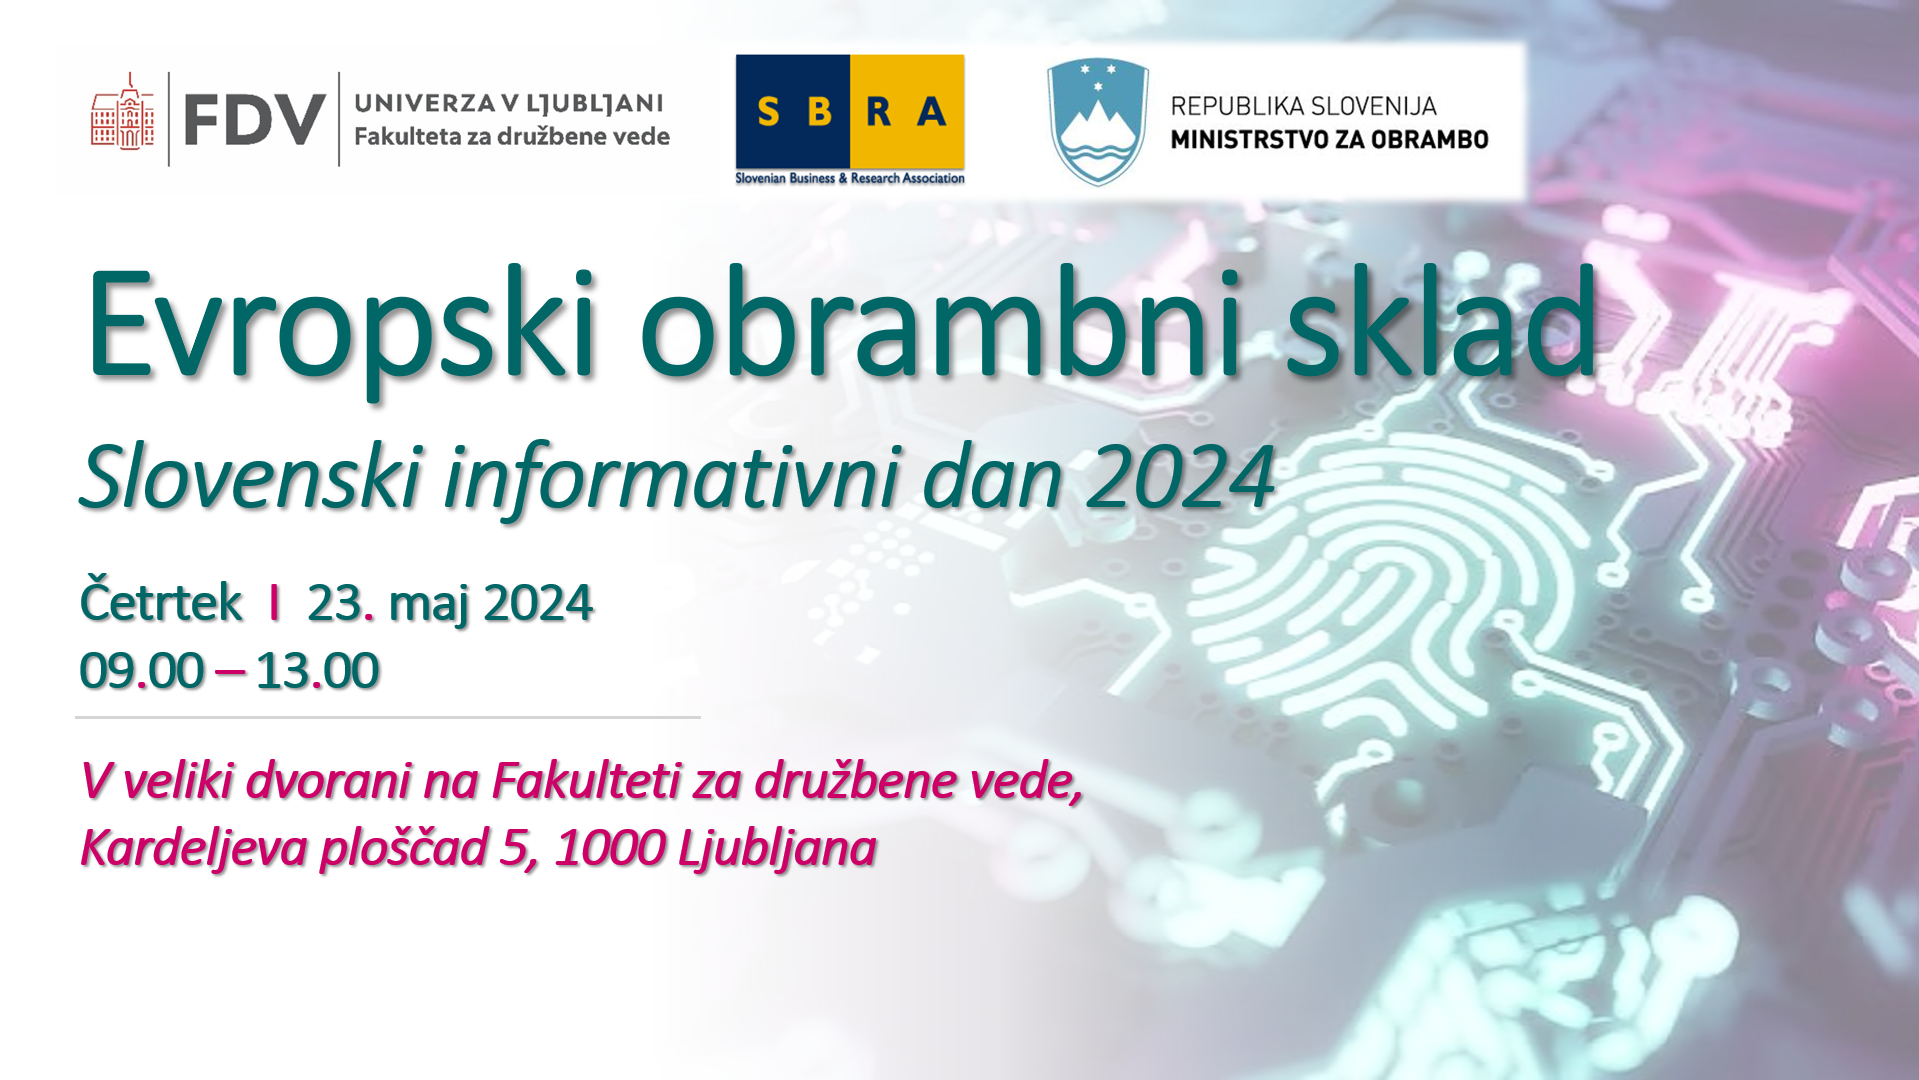 Arhiv: Vabilo: Evropski obrambni sklad - Slovenski informativni dan 2024; 23. maj 2024 